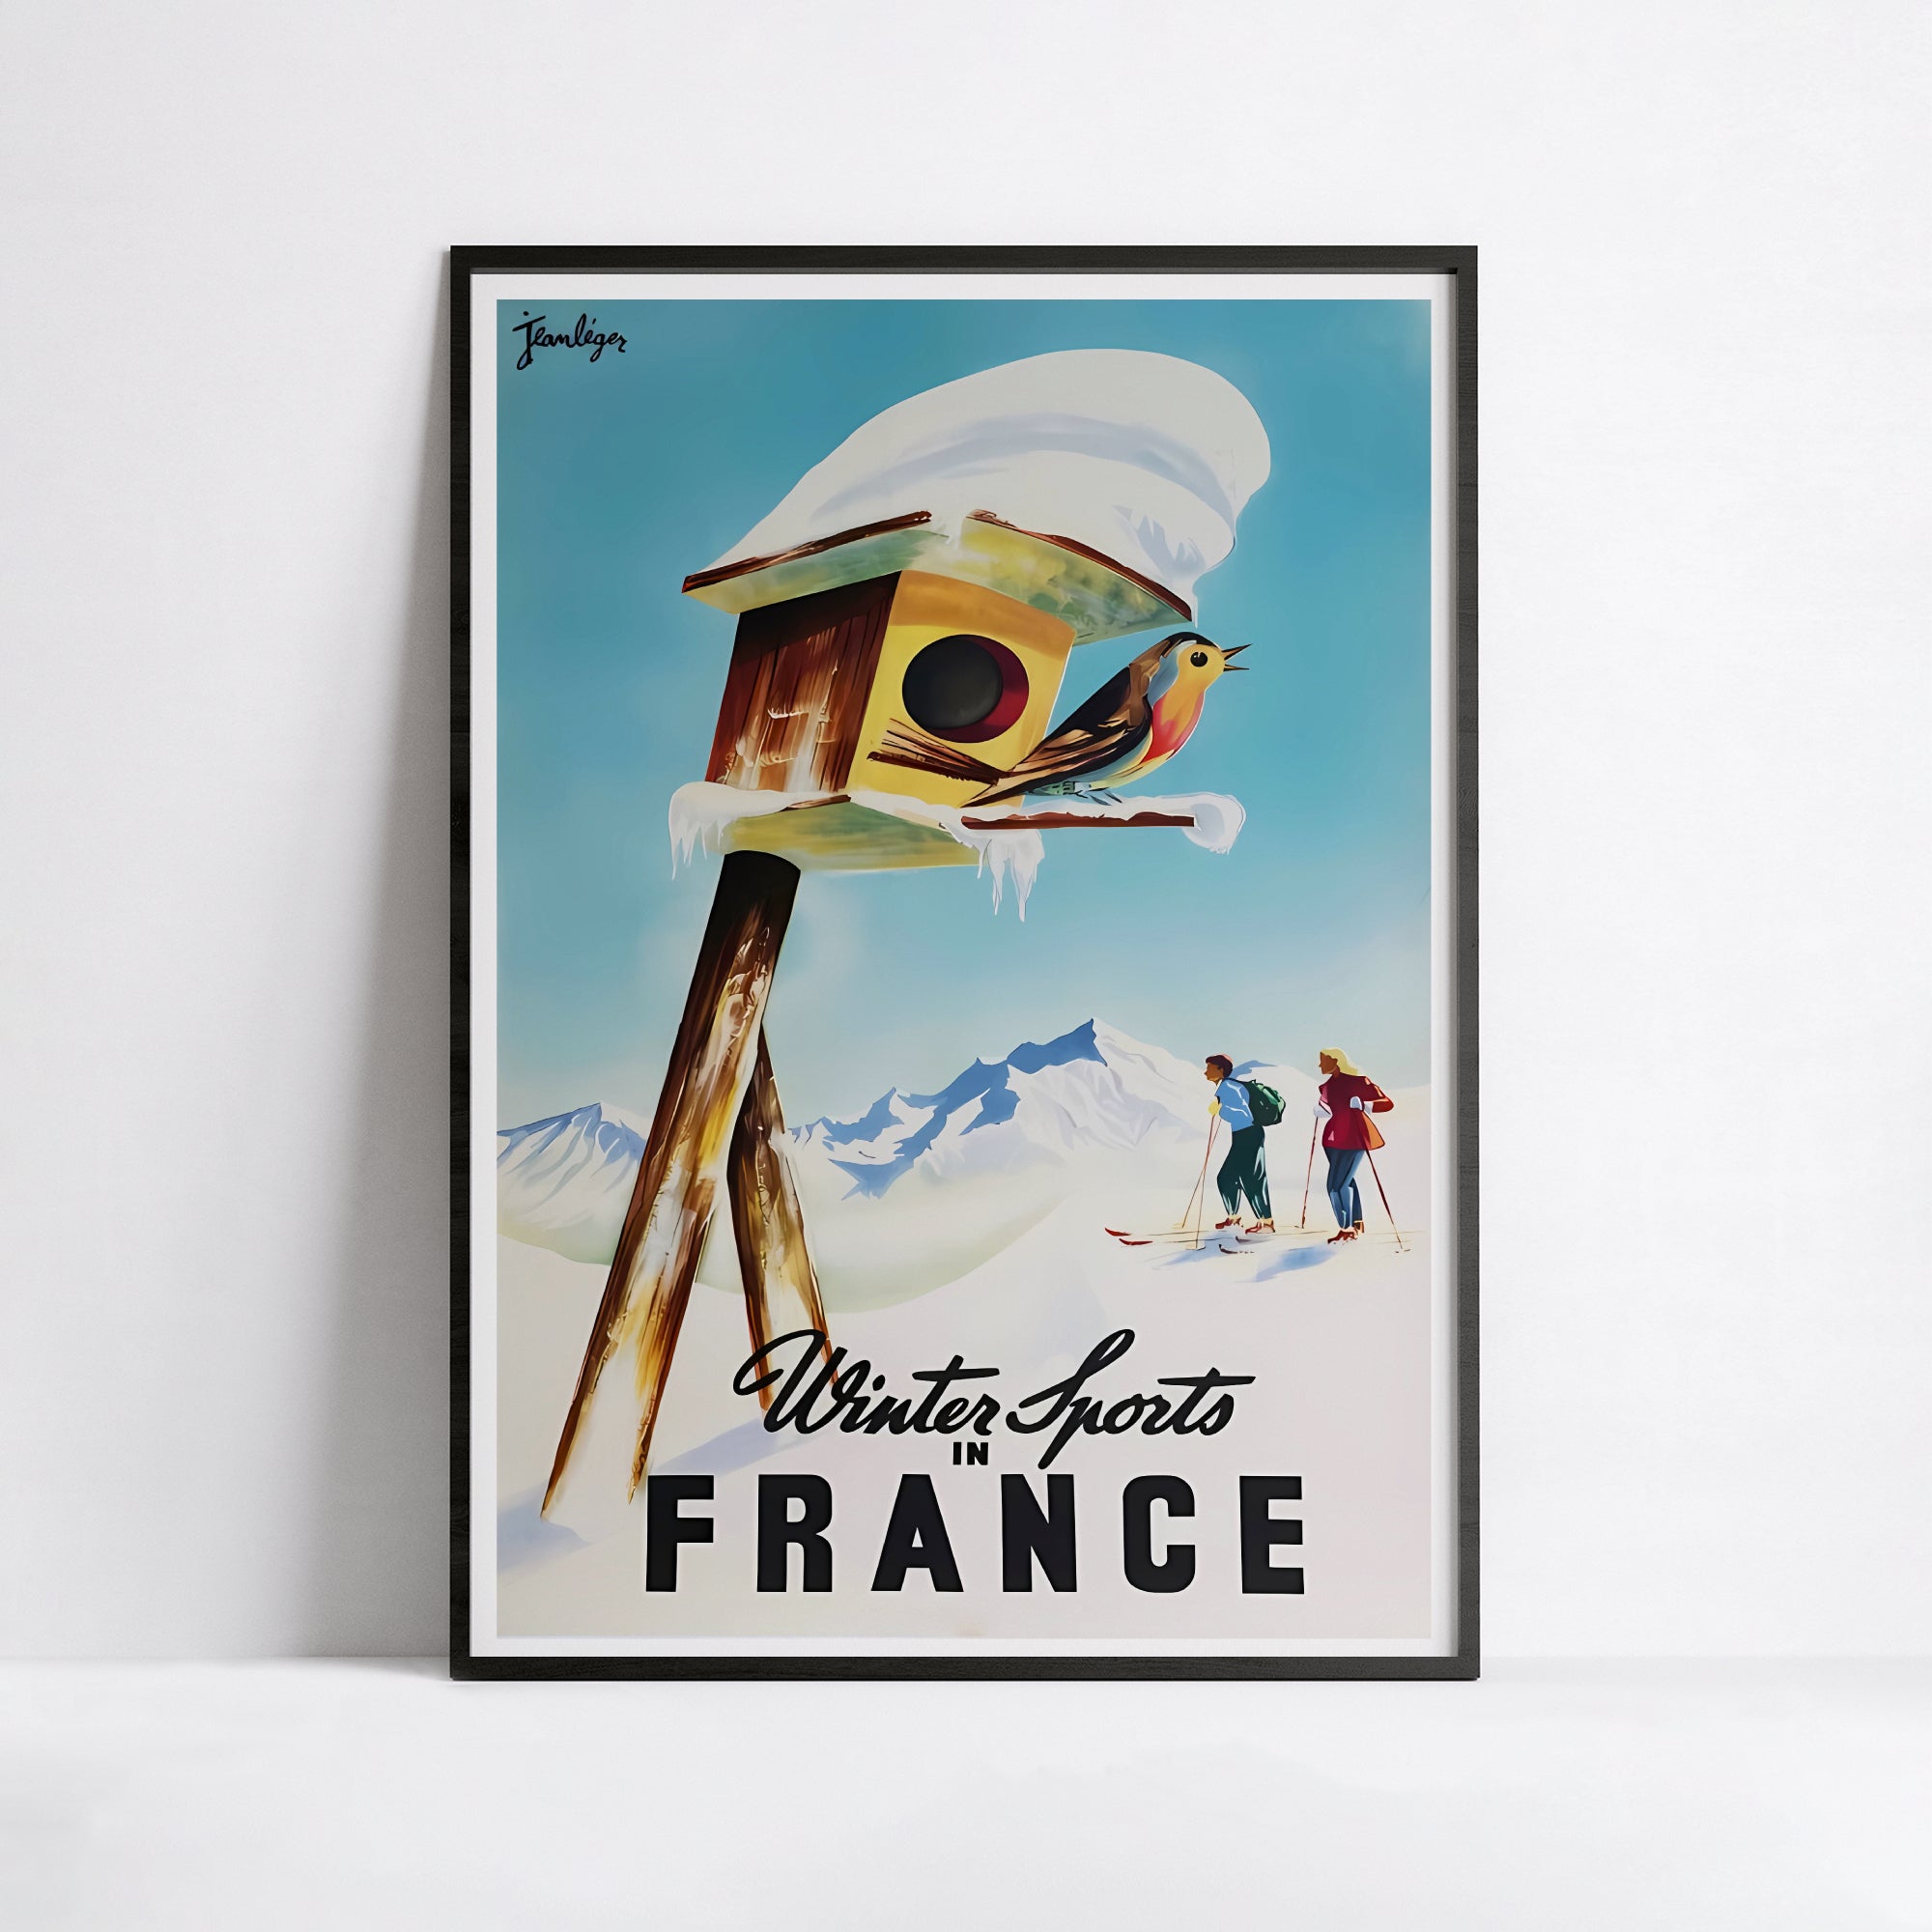 Affiche ski vintage "Wintersports in France" - Haute Définition - papier mat 230gr/m²